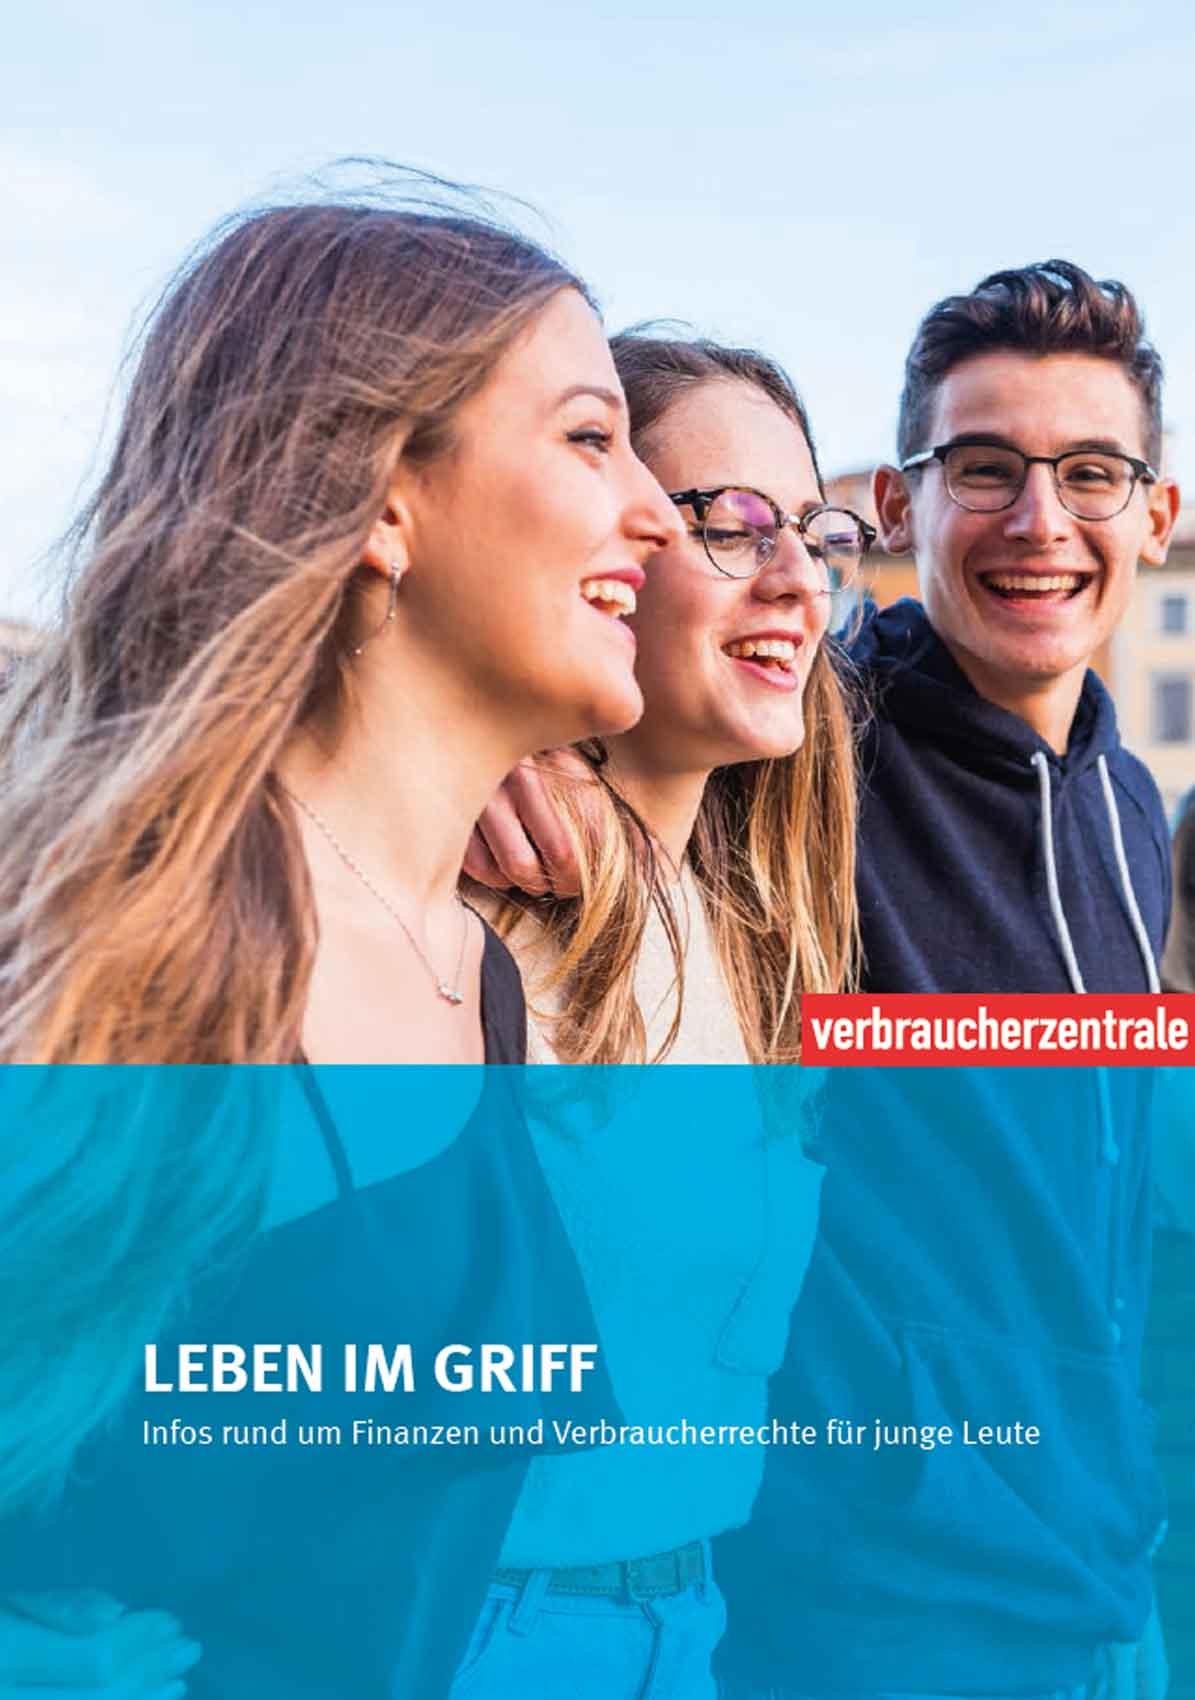 Titelbild der Broschüre Leben im Griff von der Verbraucherzentrale - zu sehen sind die drei junge, fröhliche Menschen